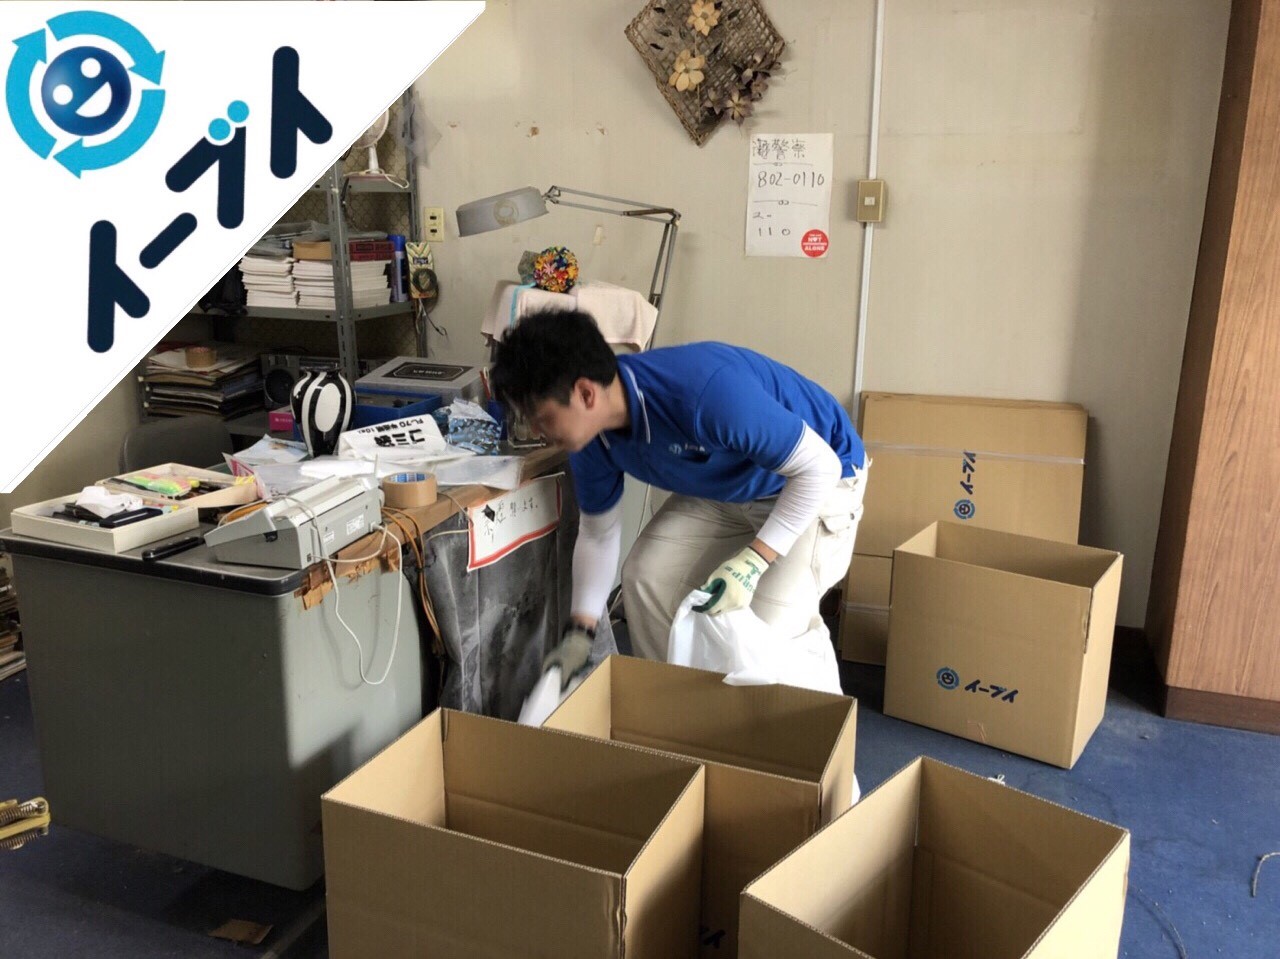 2018年11月18日大阪府島本町で店舗の移転に伴う事務机等の不用品回収をしました。写真30分